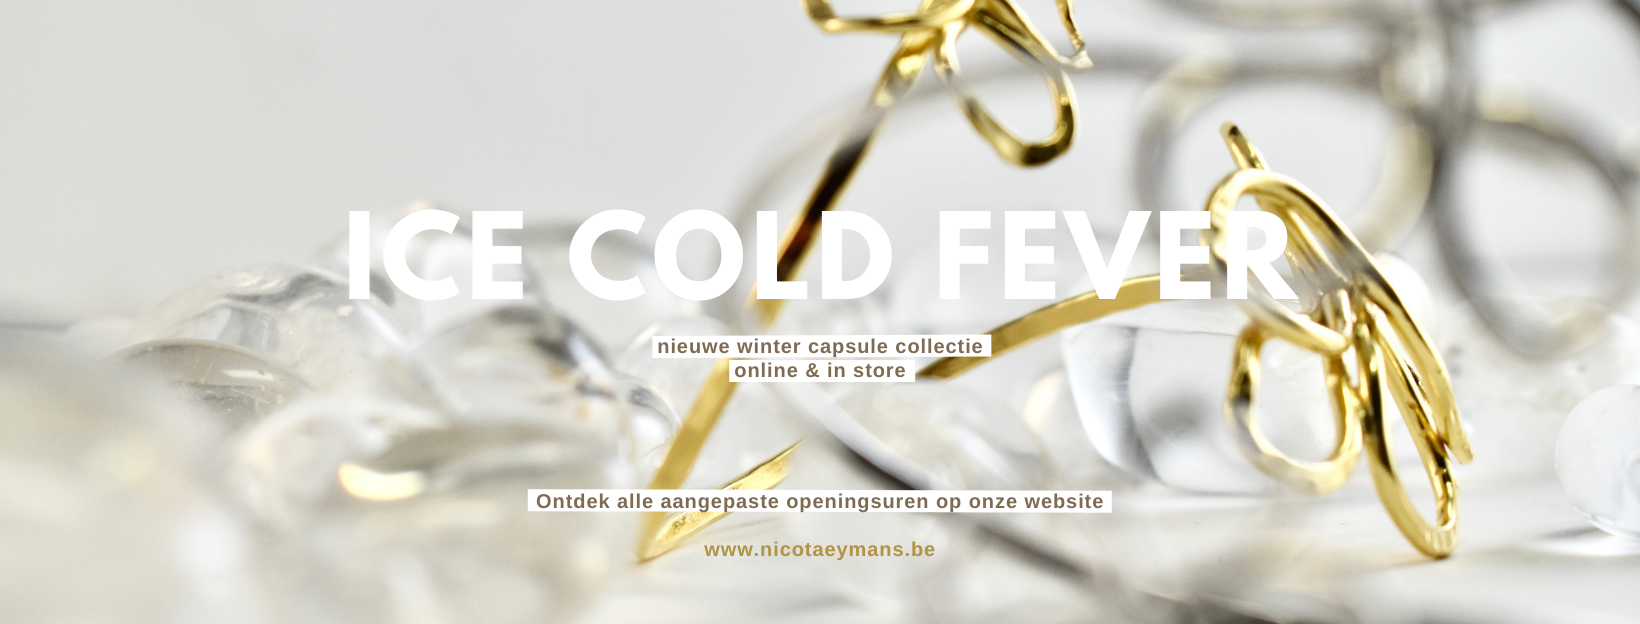 Ontdek onze nieuwe ice cold fever collectie